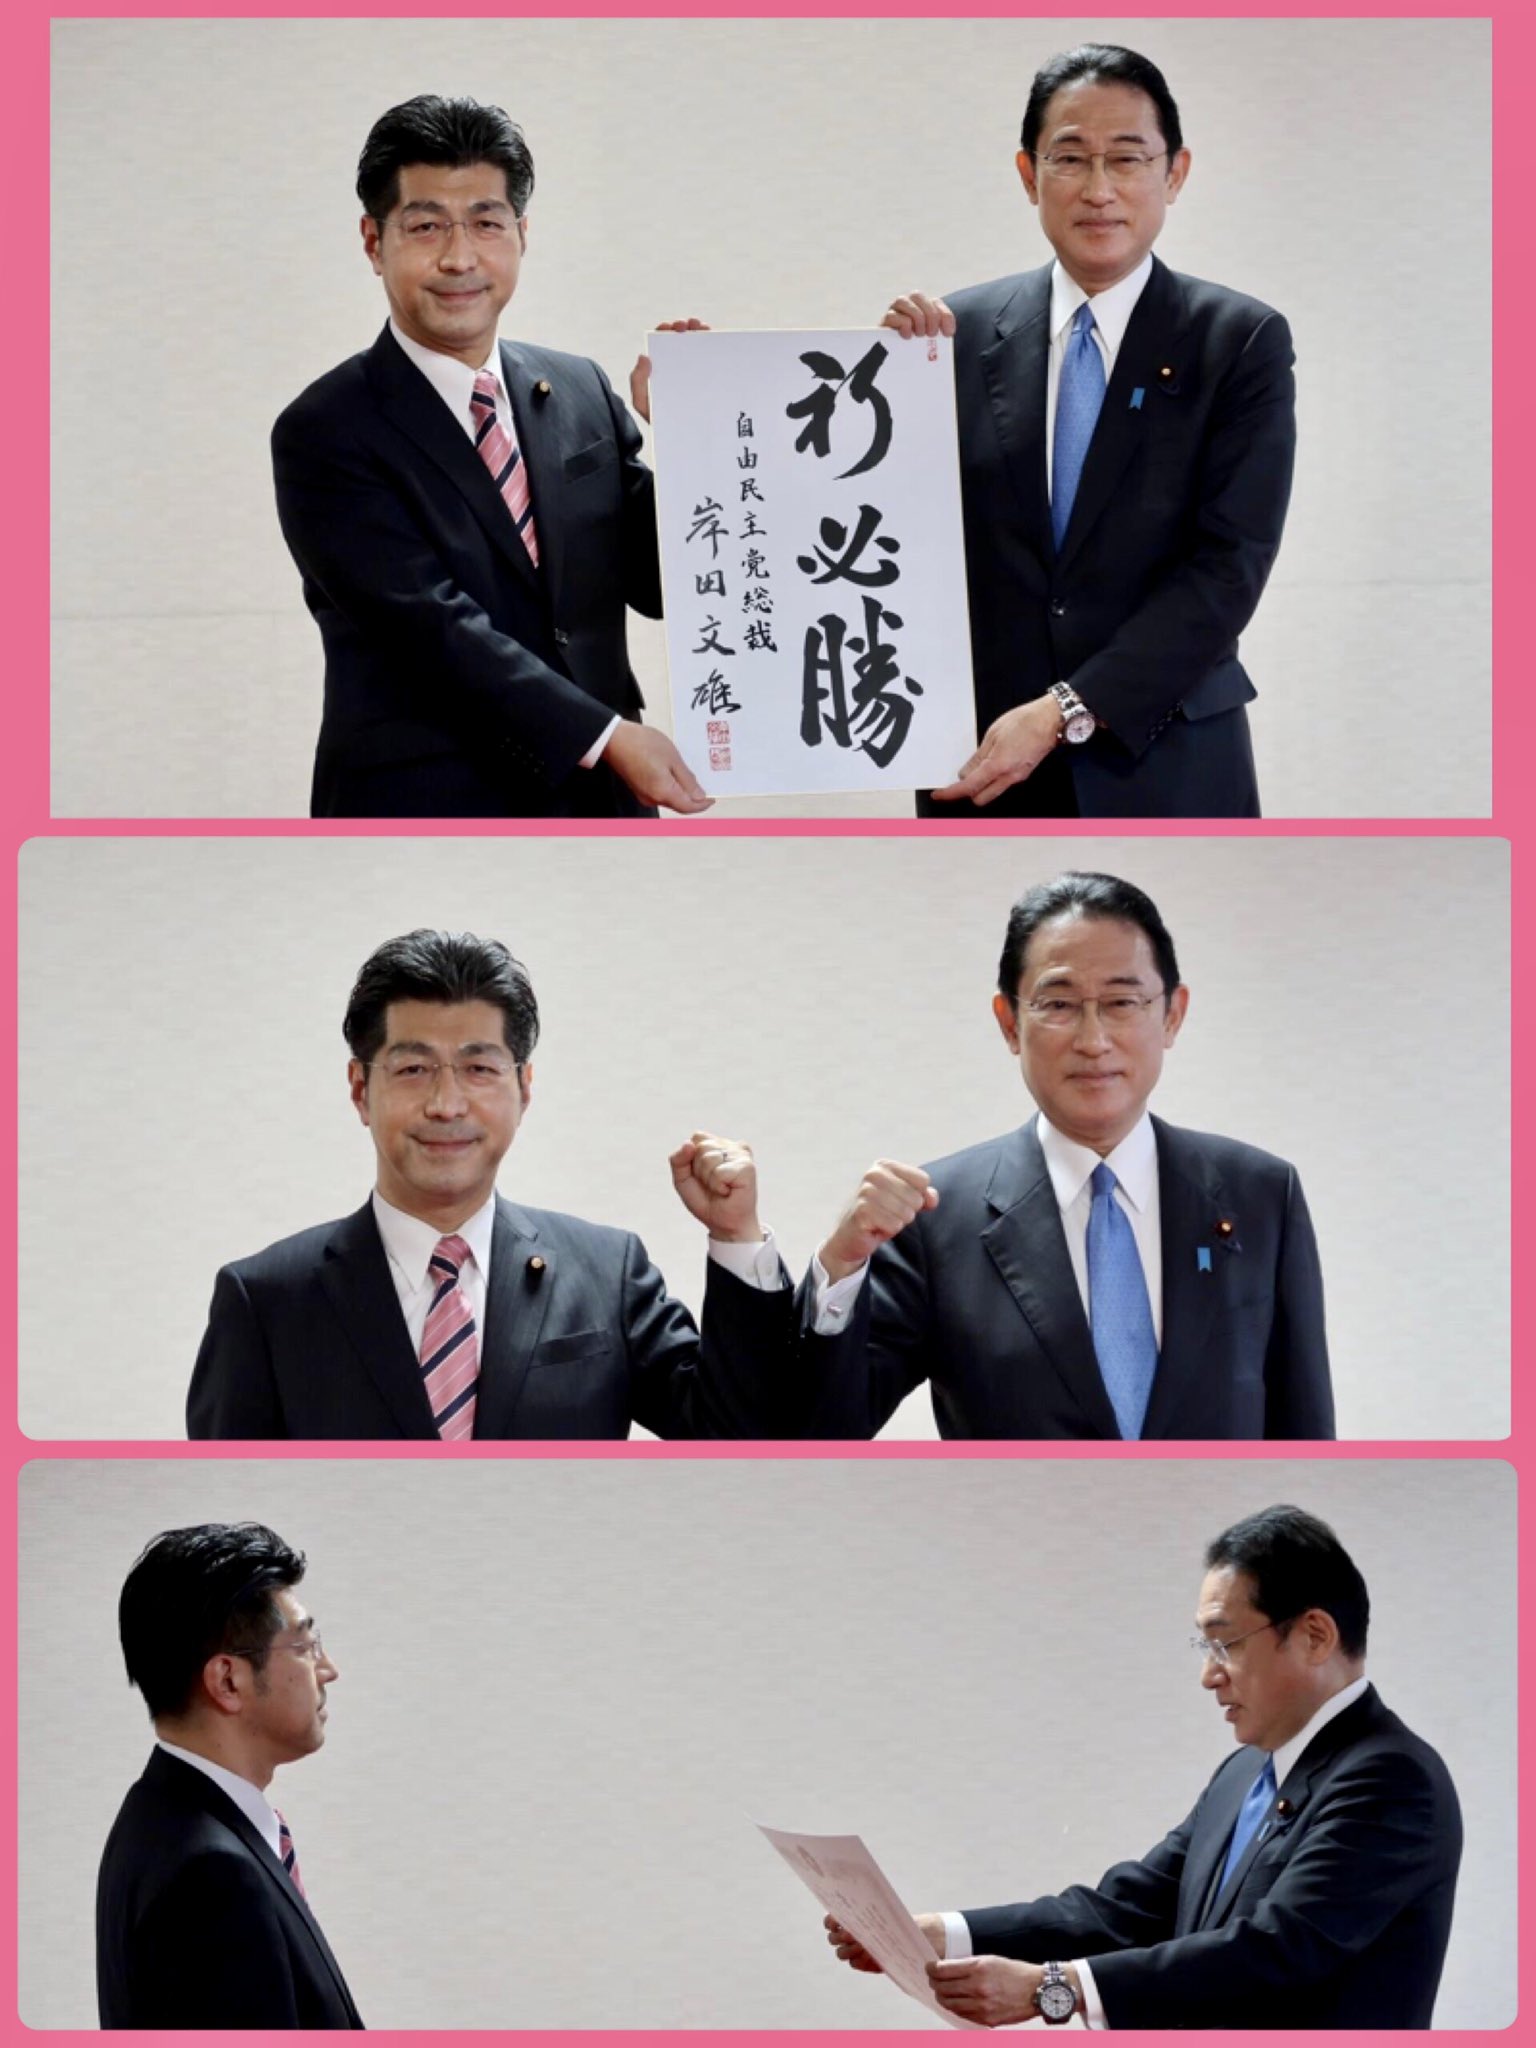 岸田総裁より自民党様からの推薦証を頂戴しました